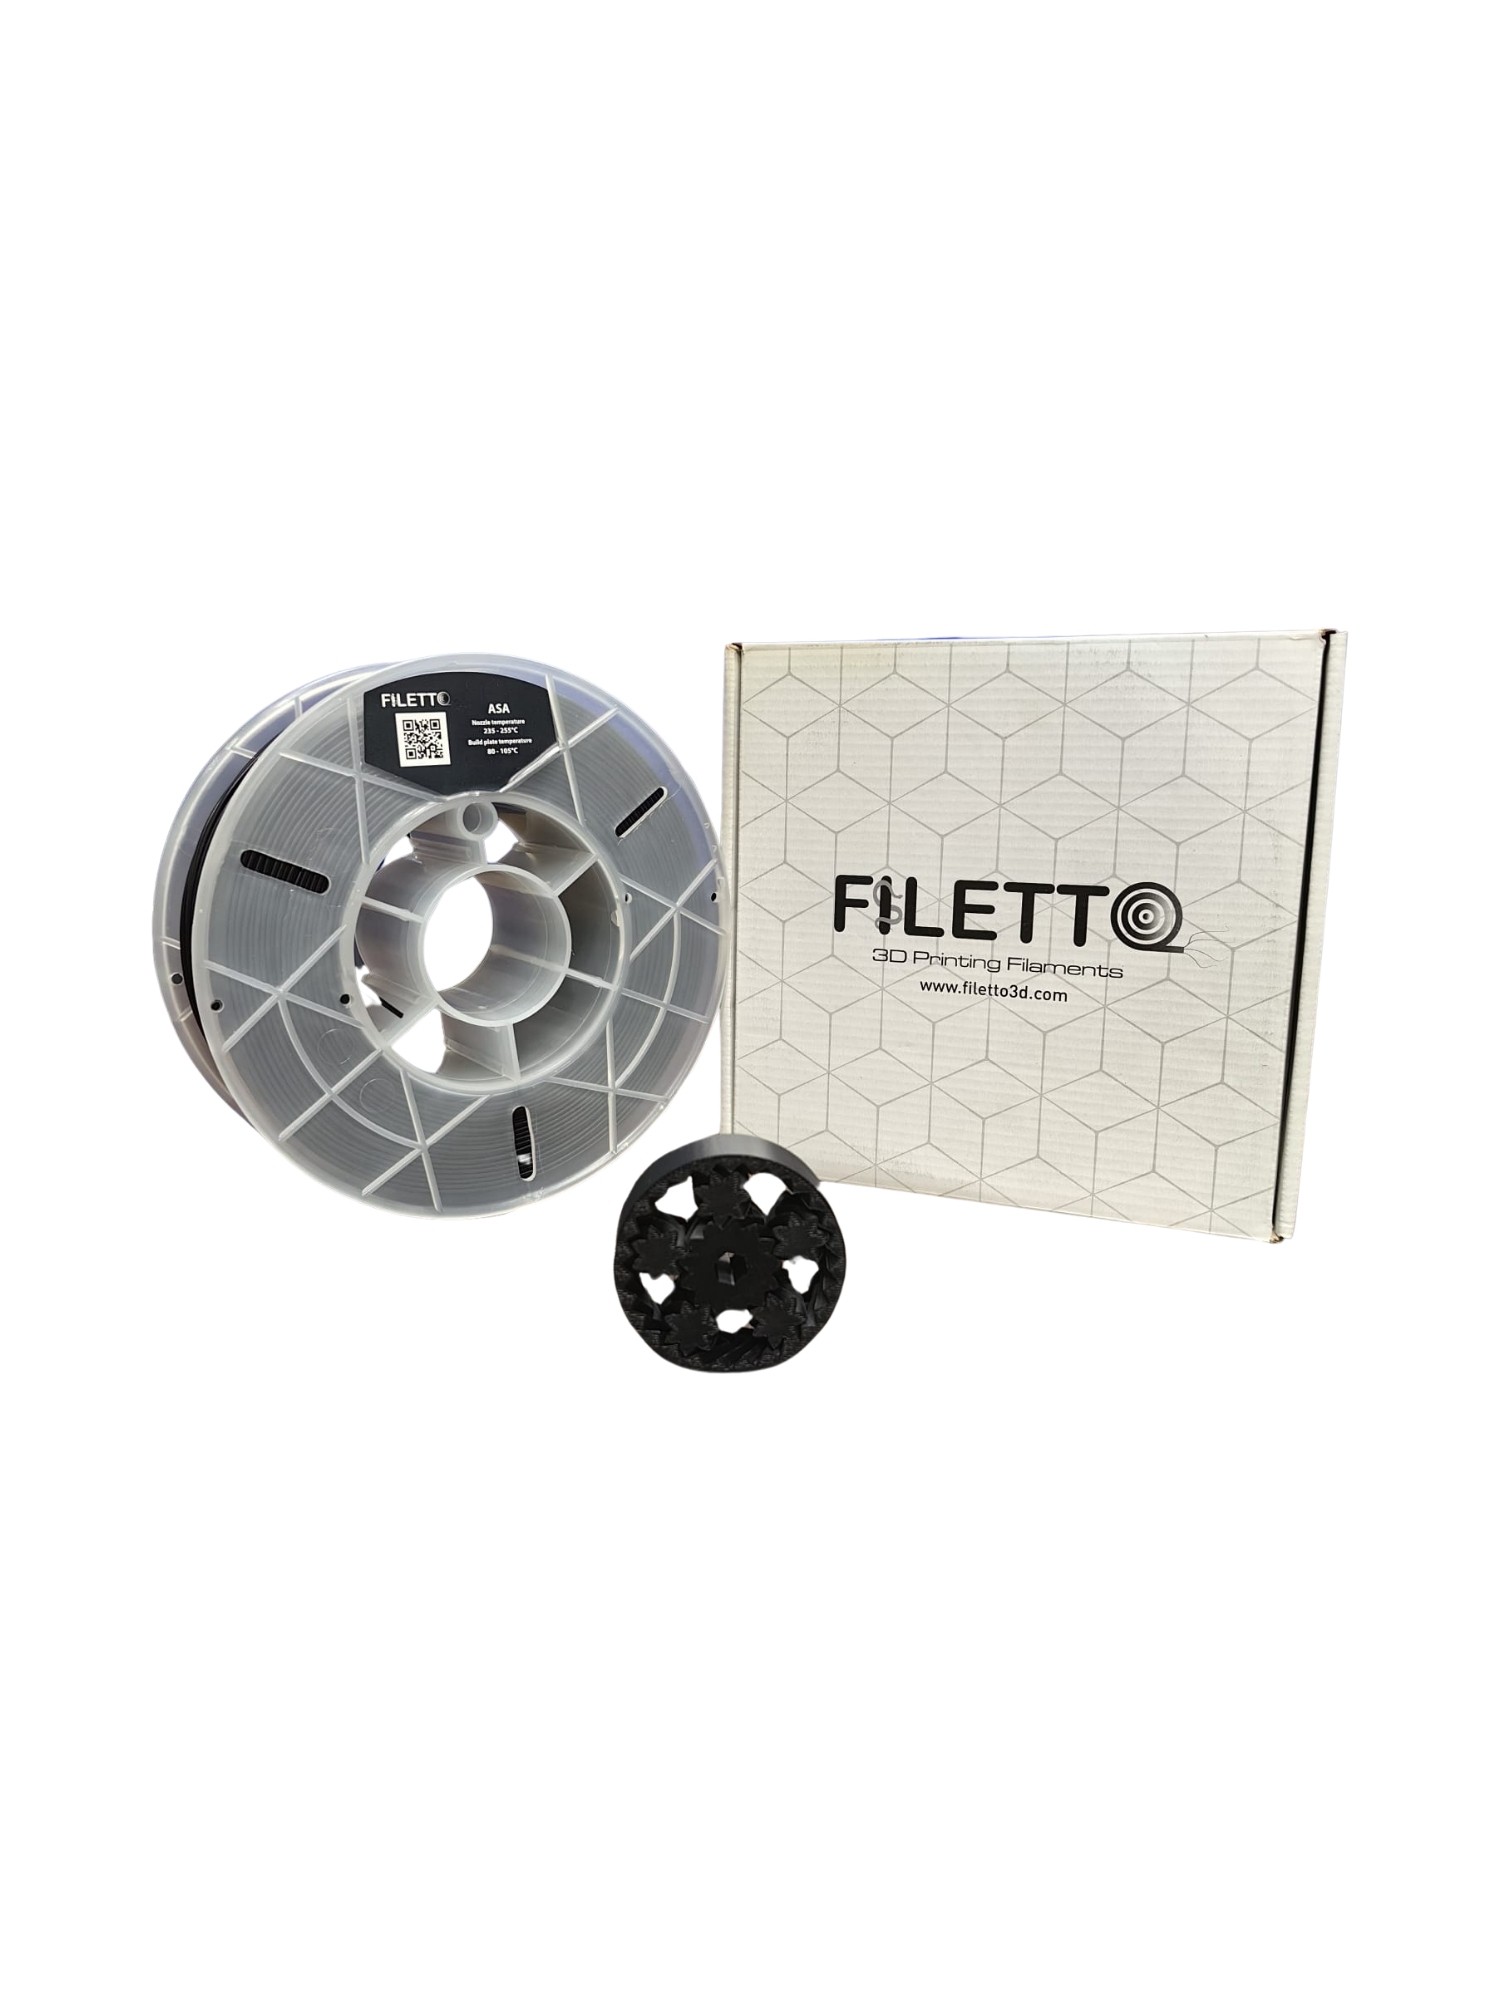 Filetto 1.75 mm ASA Filament - Black